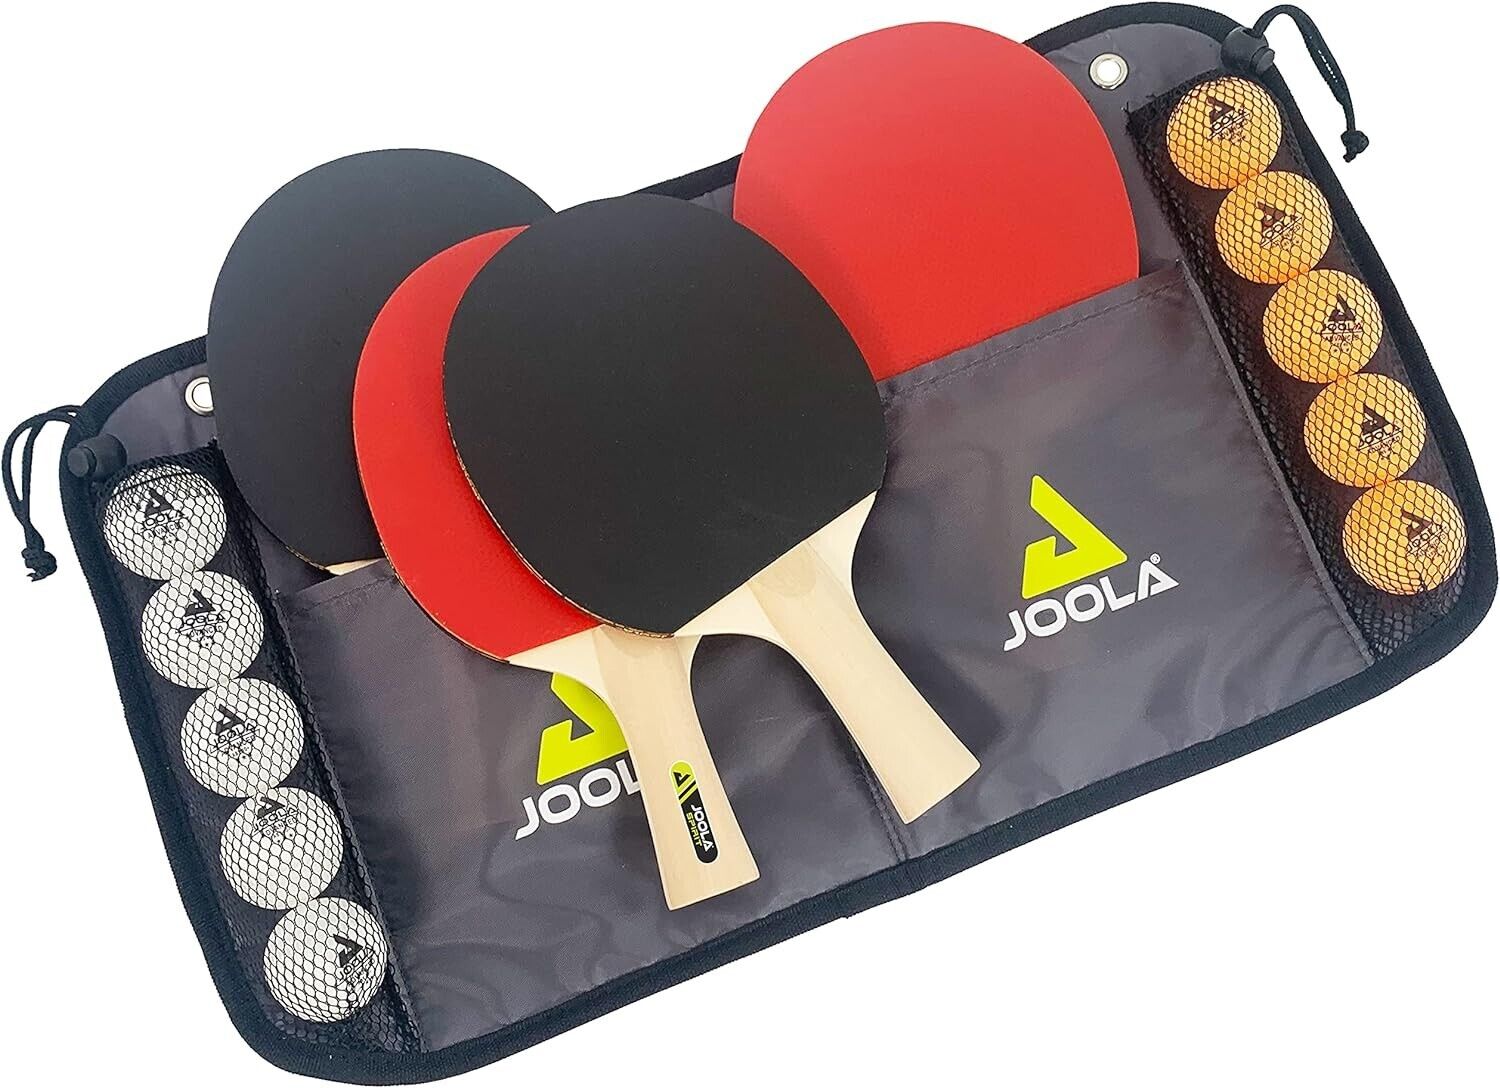 JOOLA Tischtennis Family Set 4 x Tischtennisschläger 10 x Bälle inkl. Tasche TT